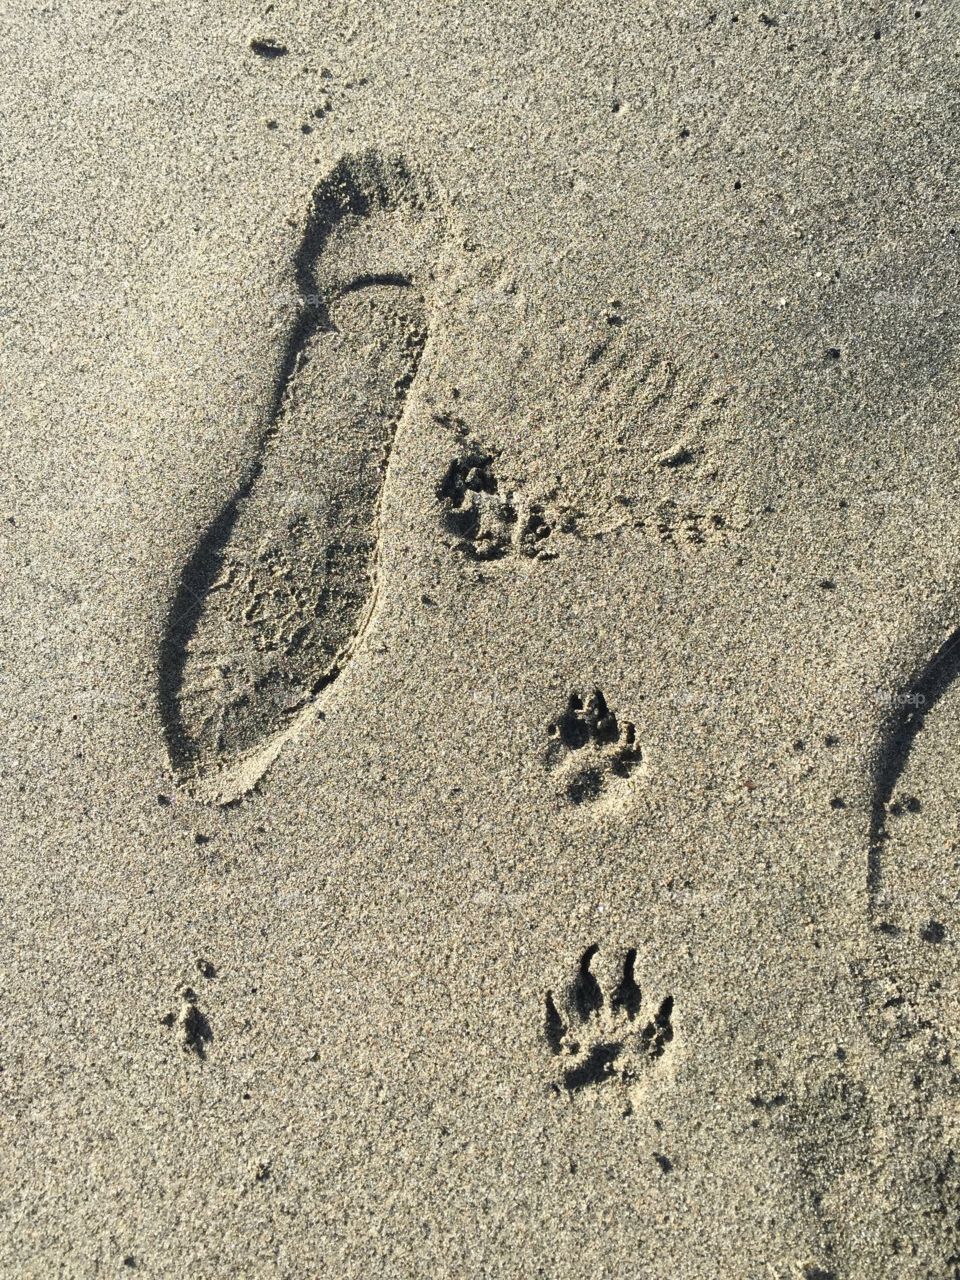 Incontro umano - cane sulla spiaggia di Ostia 